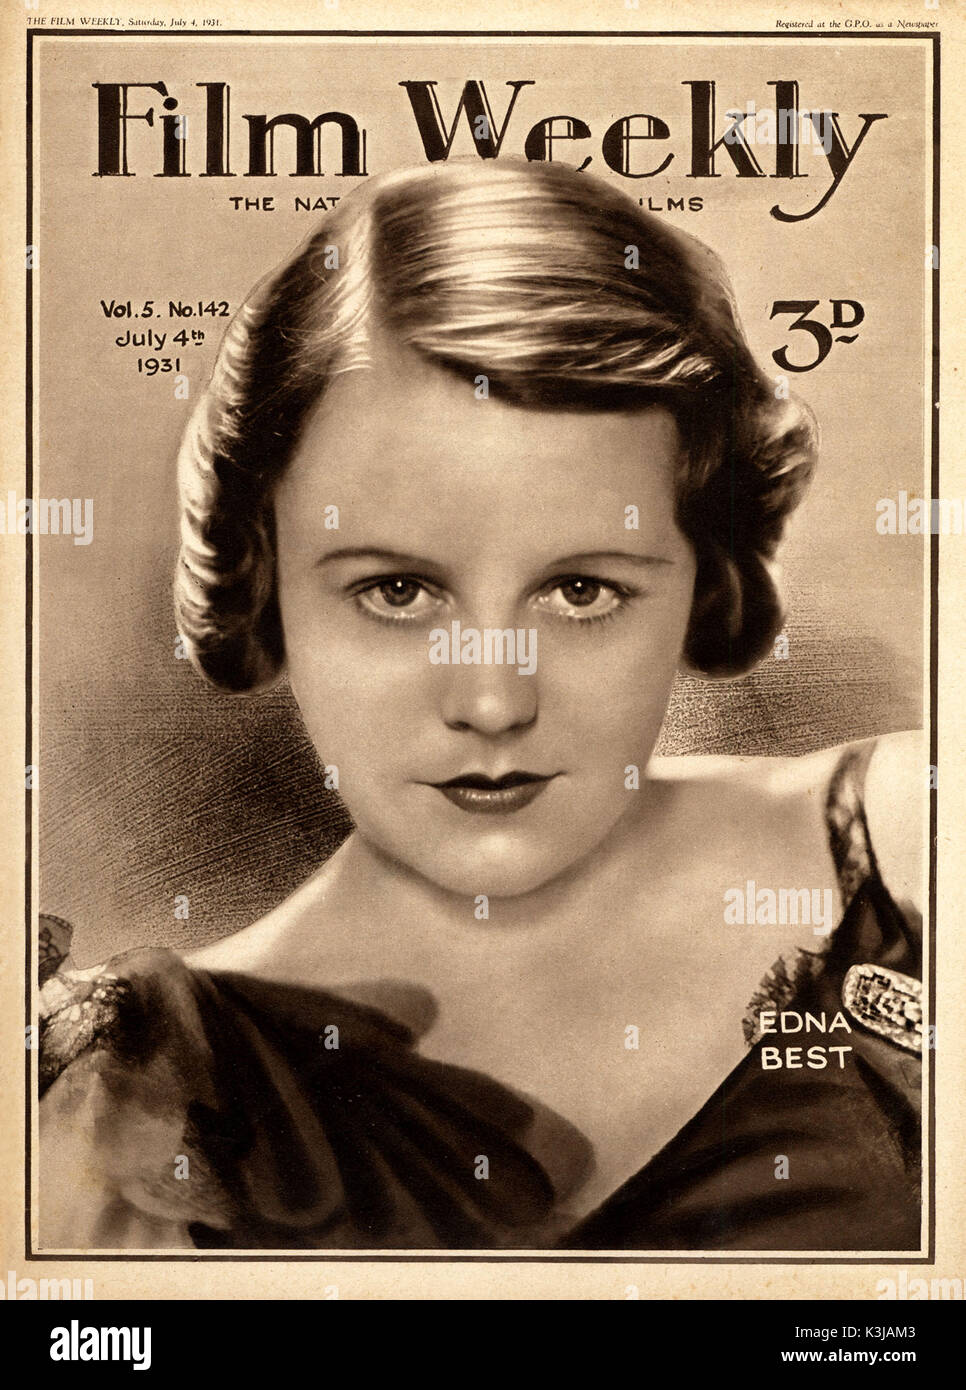 EDNA migliori sul coperchio anteriore della pellicola, Settimanale 1931 Foto Stock